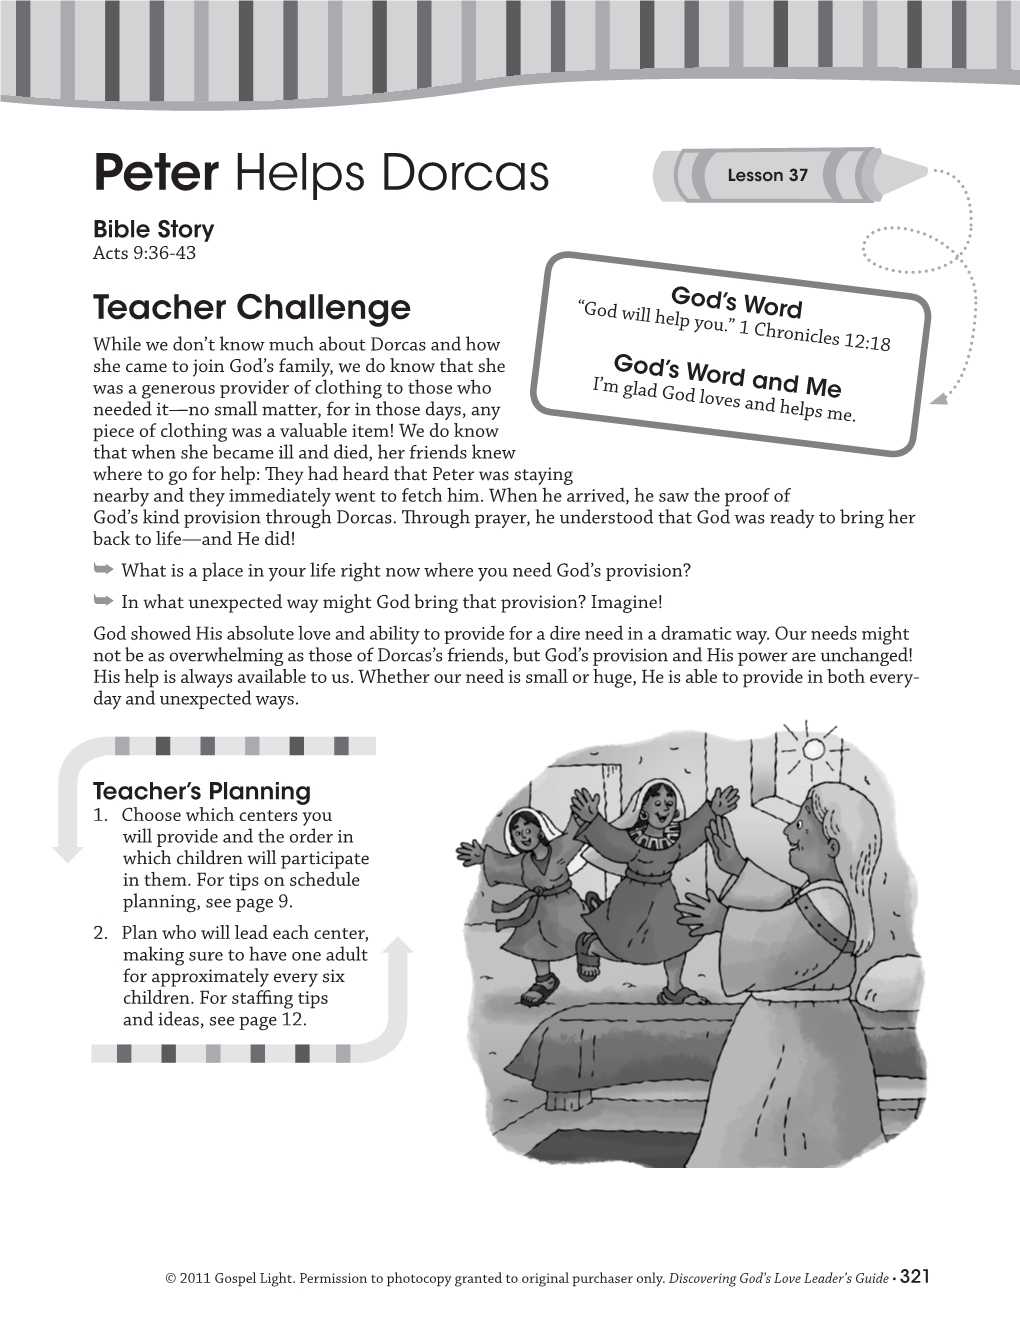 Peter Helps Dorcas